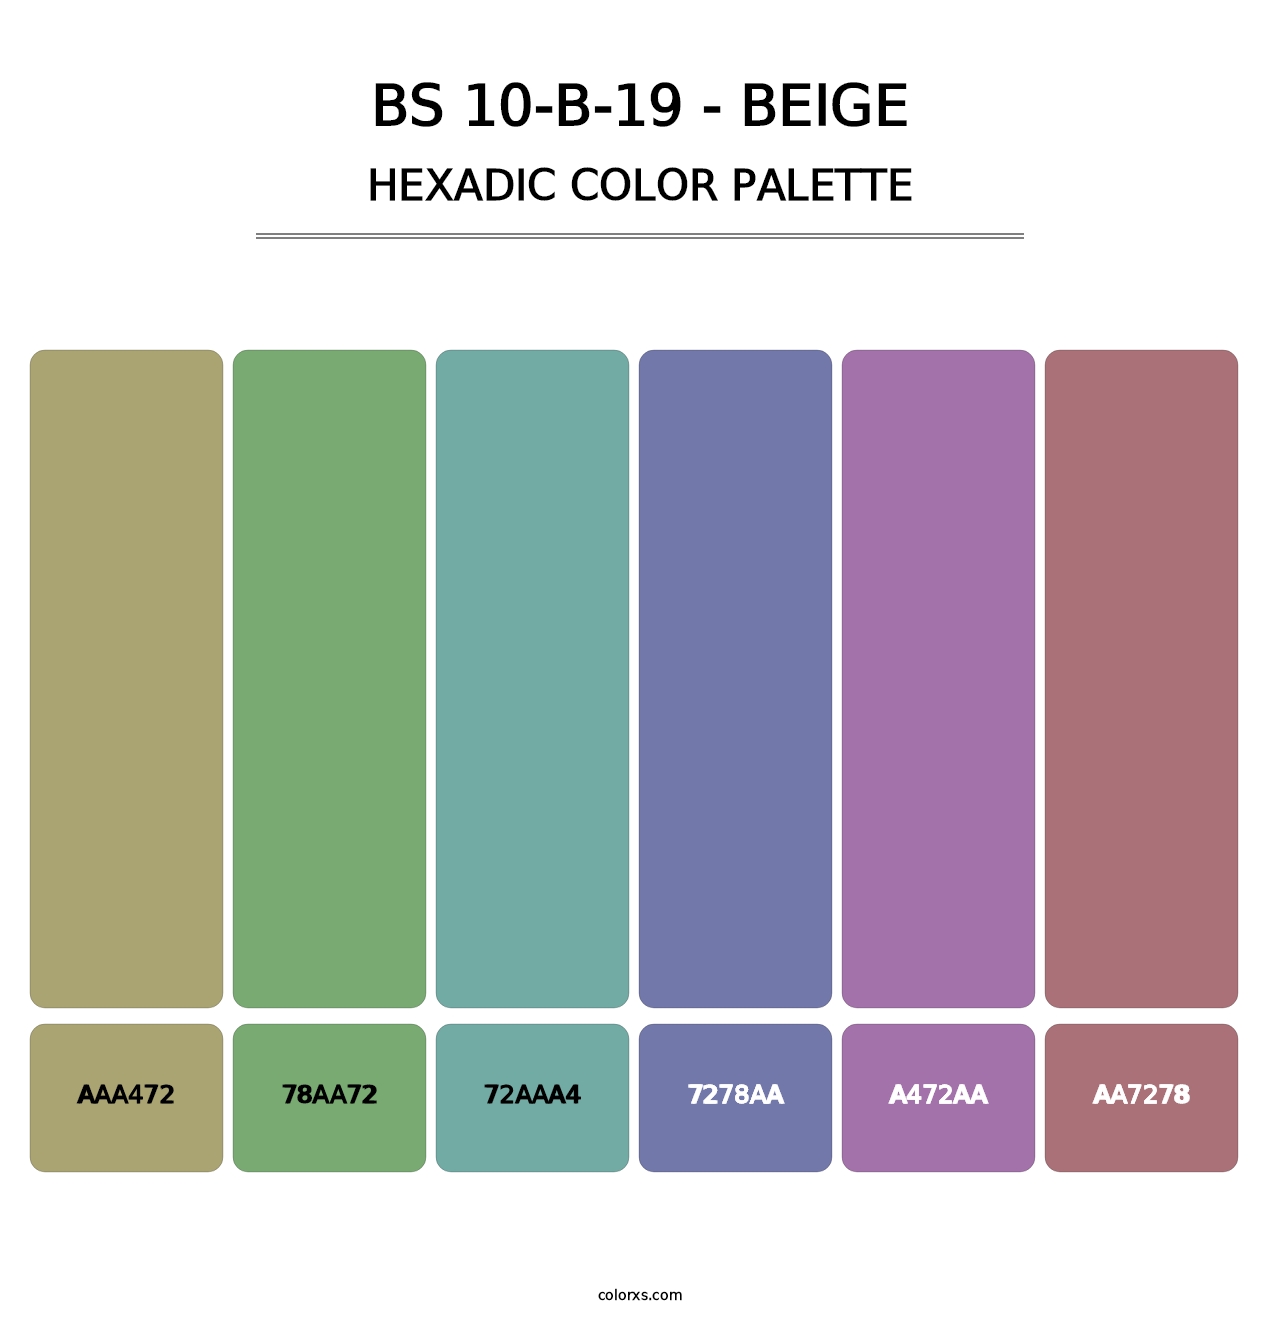 BS 10-B-19 - Beige - Hexadic Color Palette